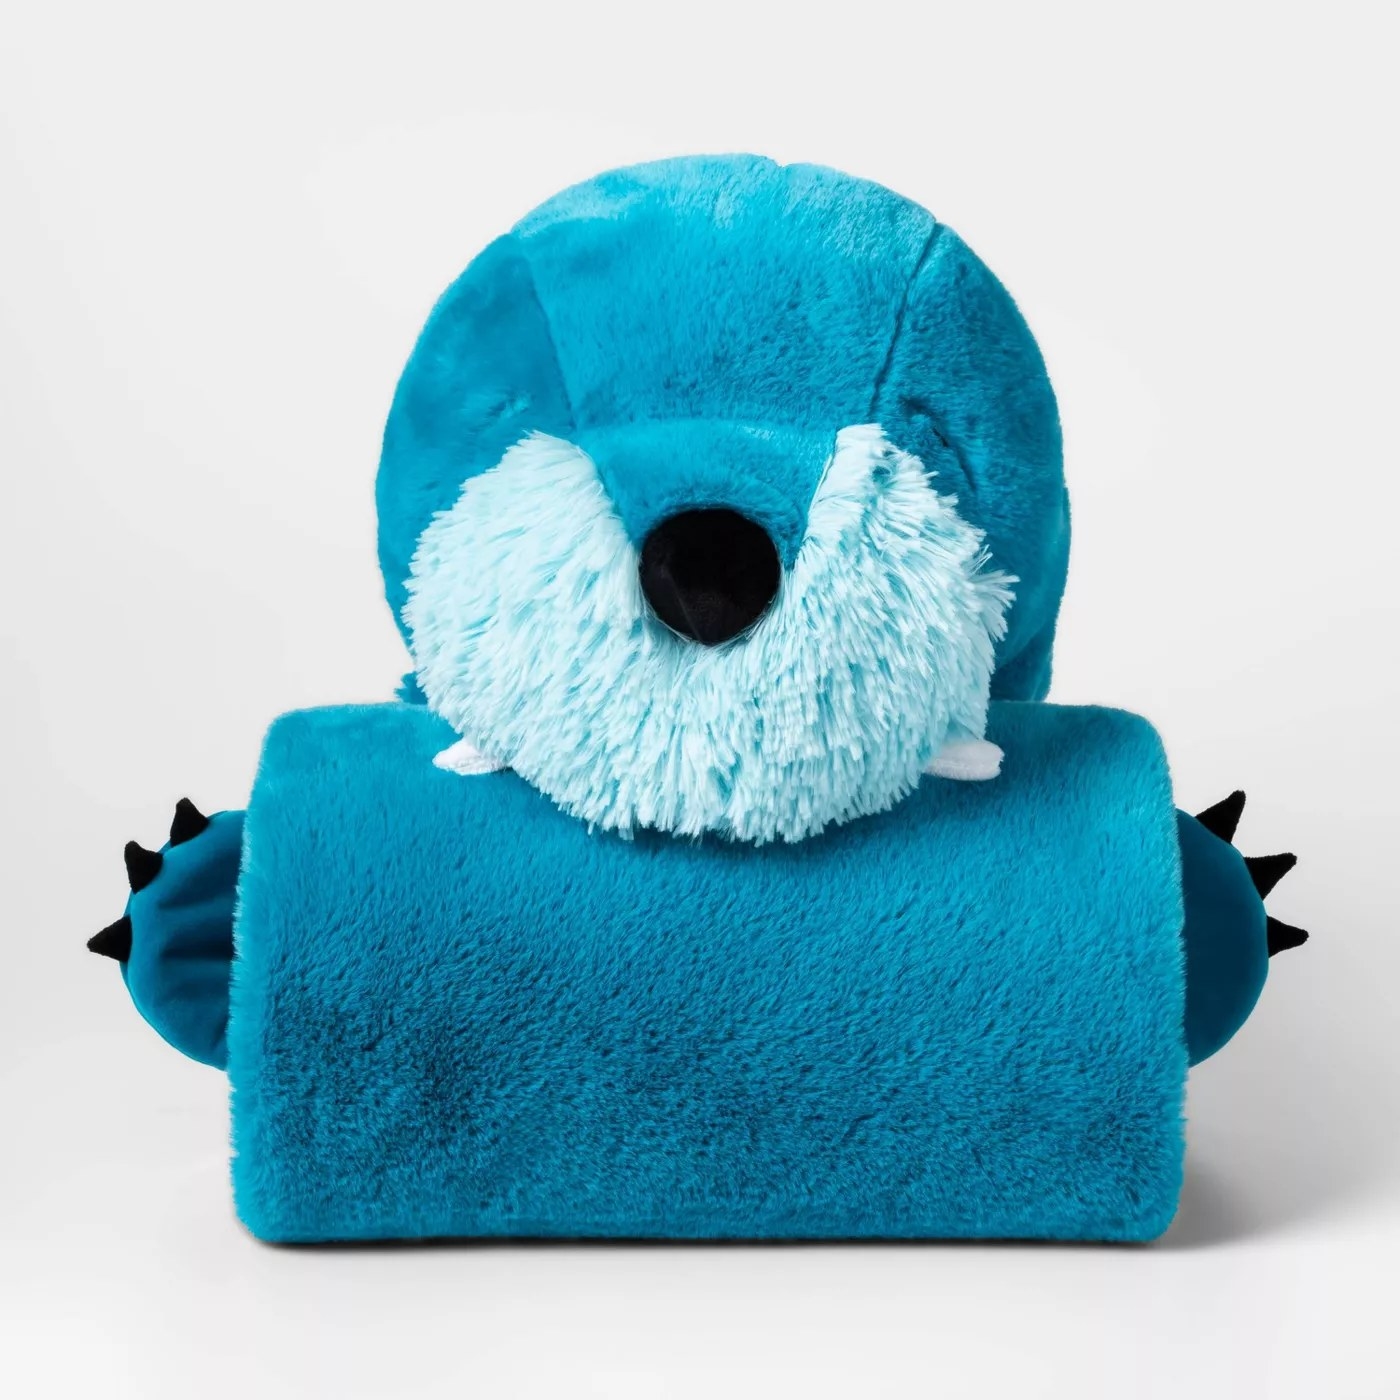 The blue walrus blanket